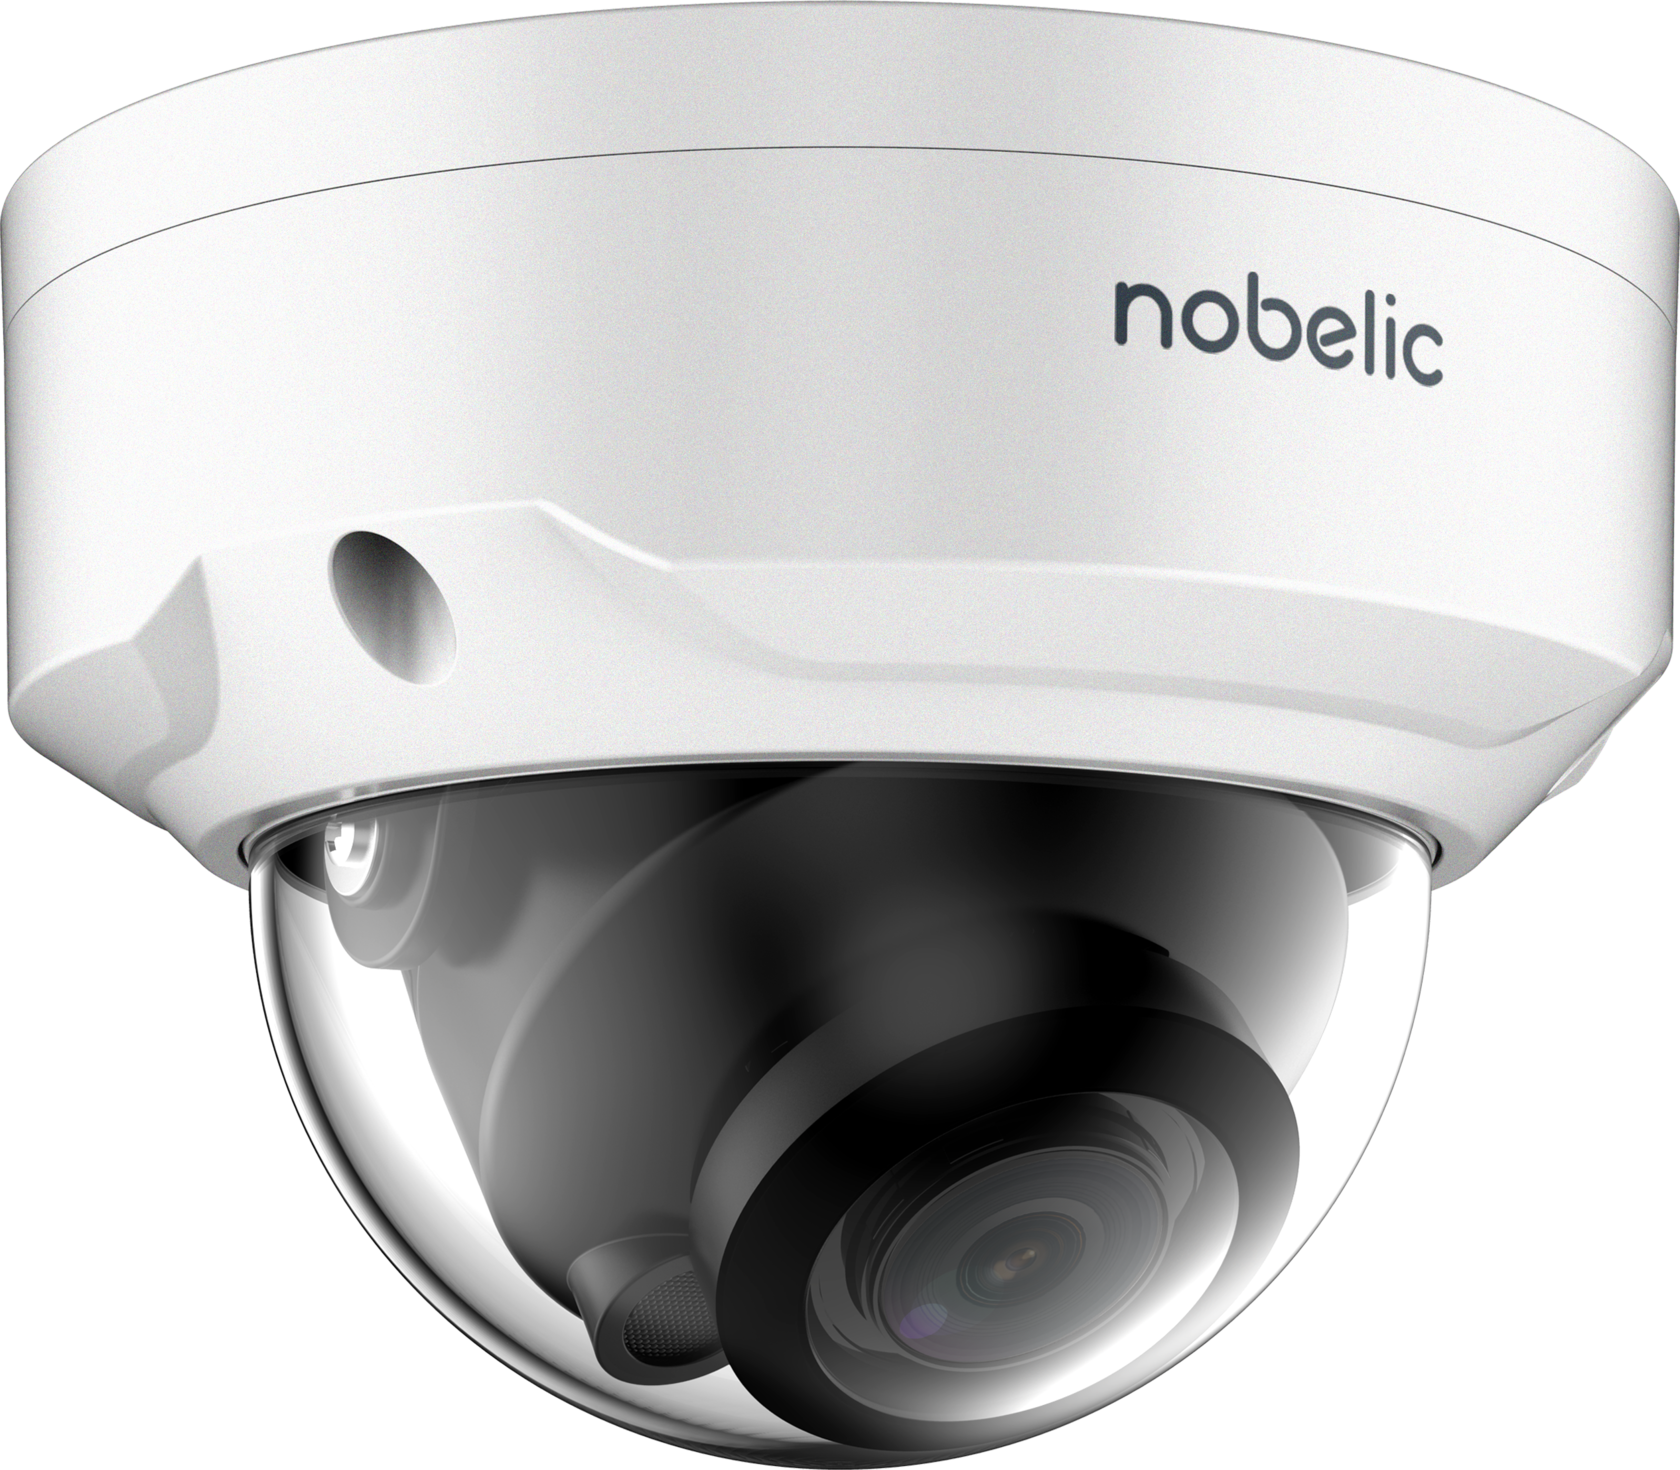 NBLC-2431f. IP-камера NBLC-1110f-MDS. Nobelic 2431f. Nobelic NBLC-2430f.